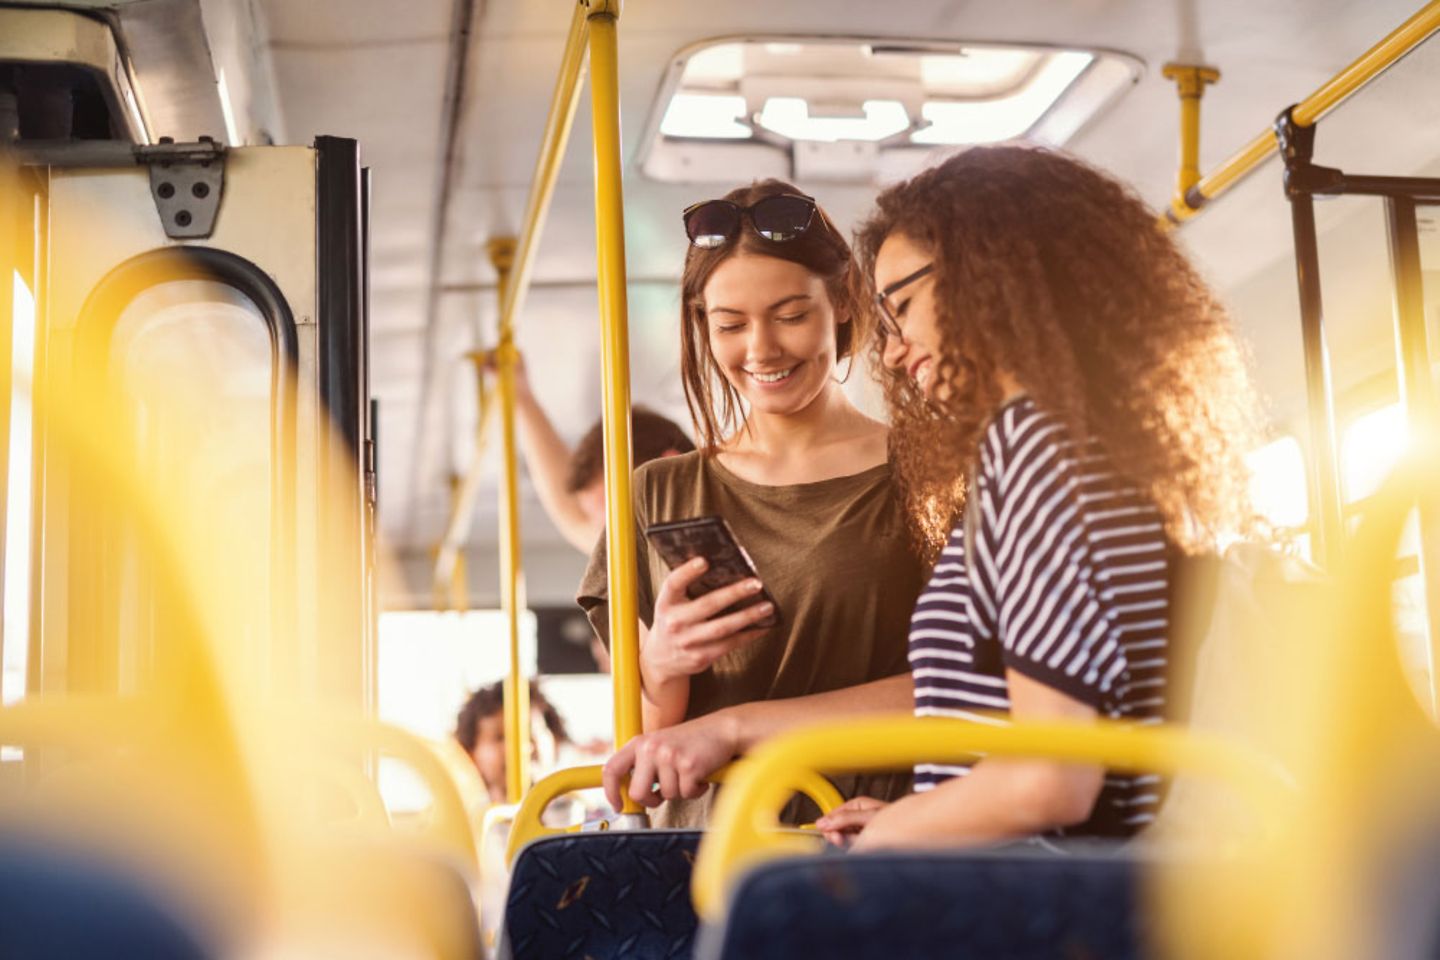 Zwei Mädchen stehen in einem öfftentlichen Verkehrsmittel und schauen auf ein Smartphone